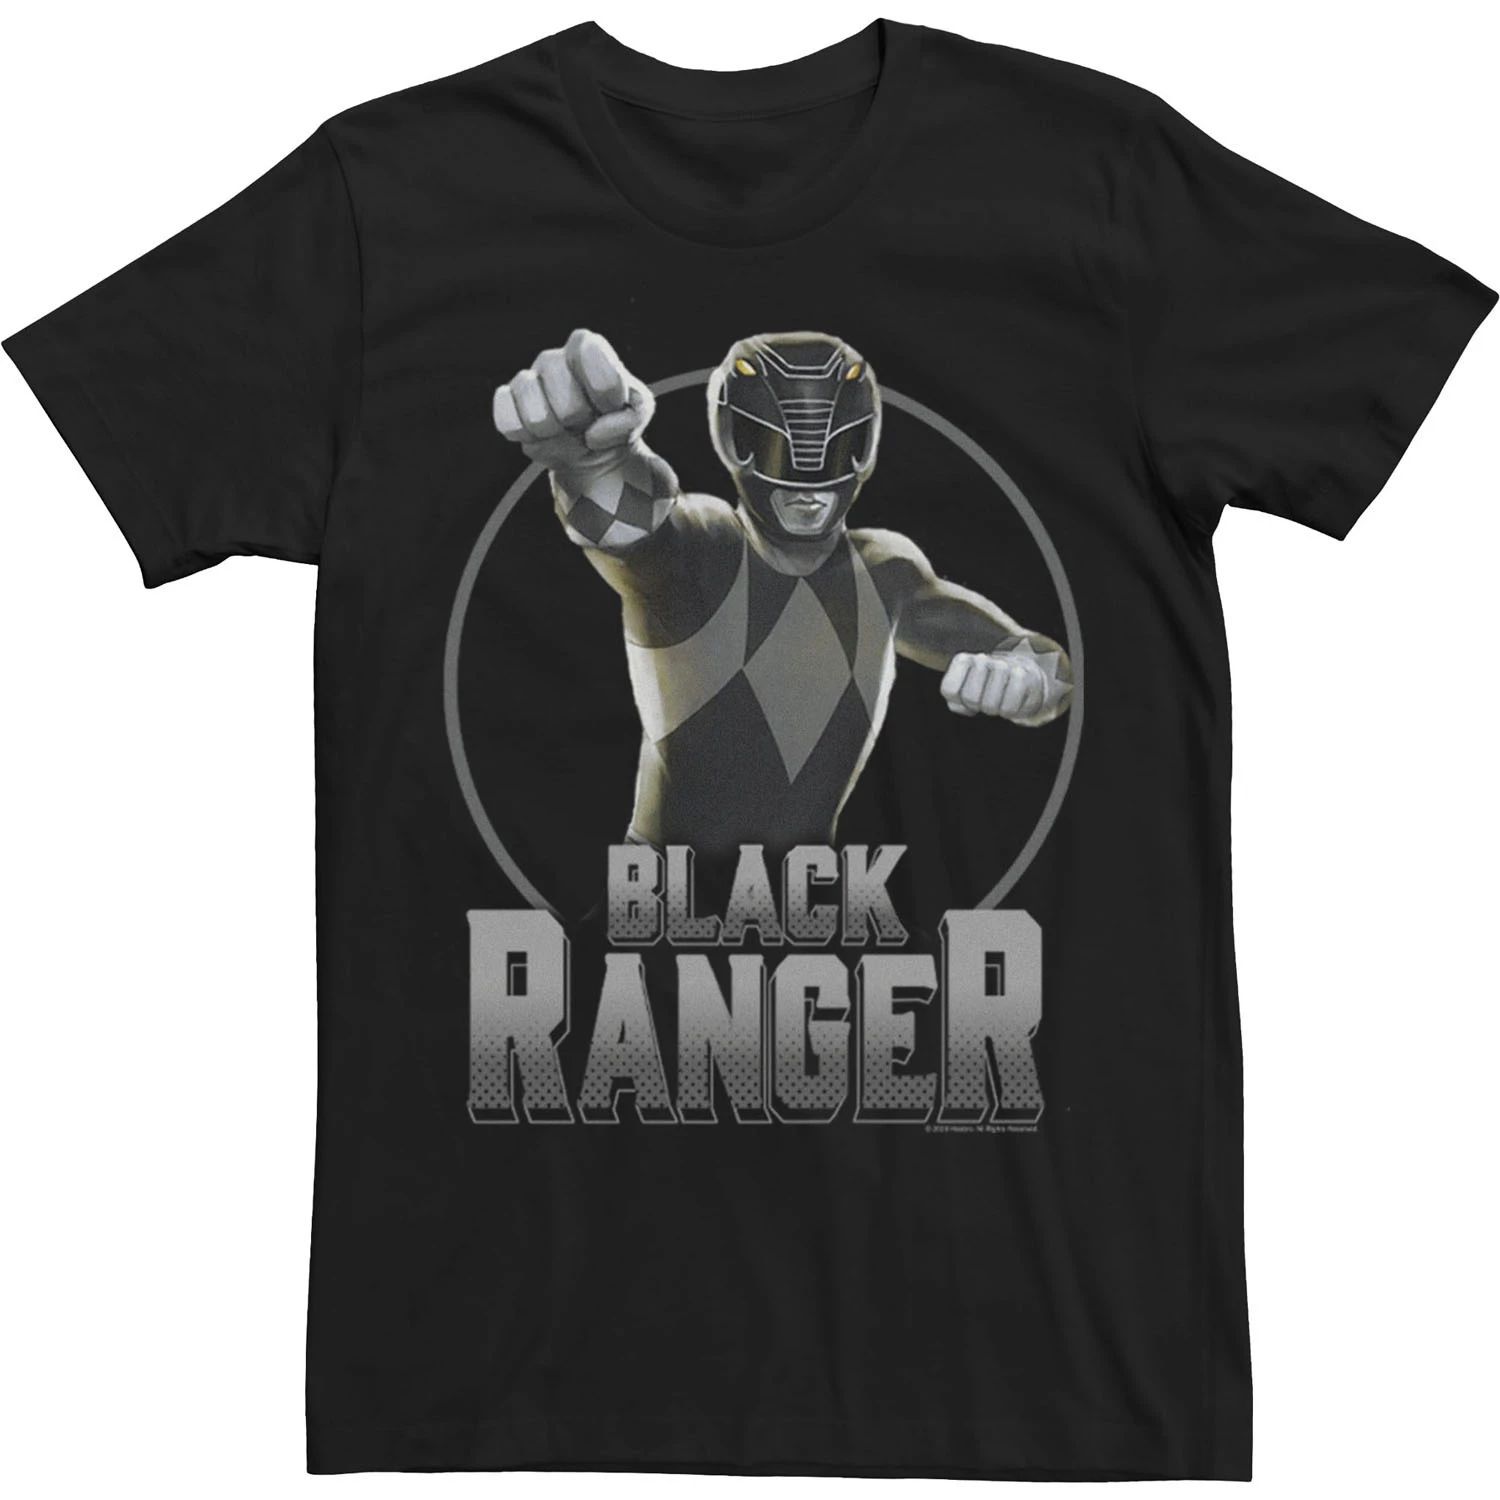 Мужская футболка Power Rangers Black Ranger с простым портретом Licensed Character